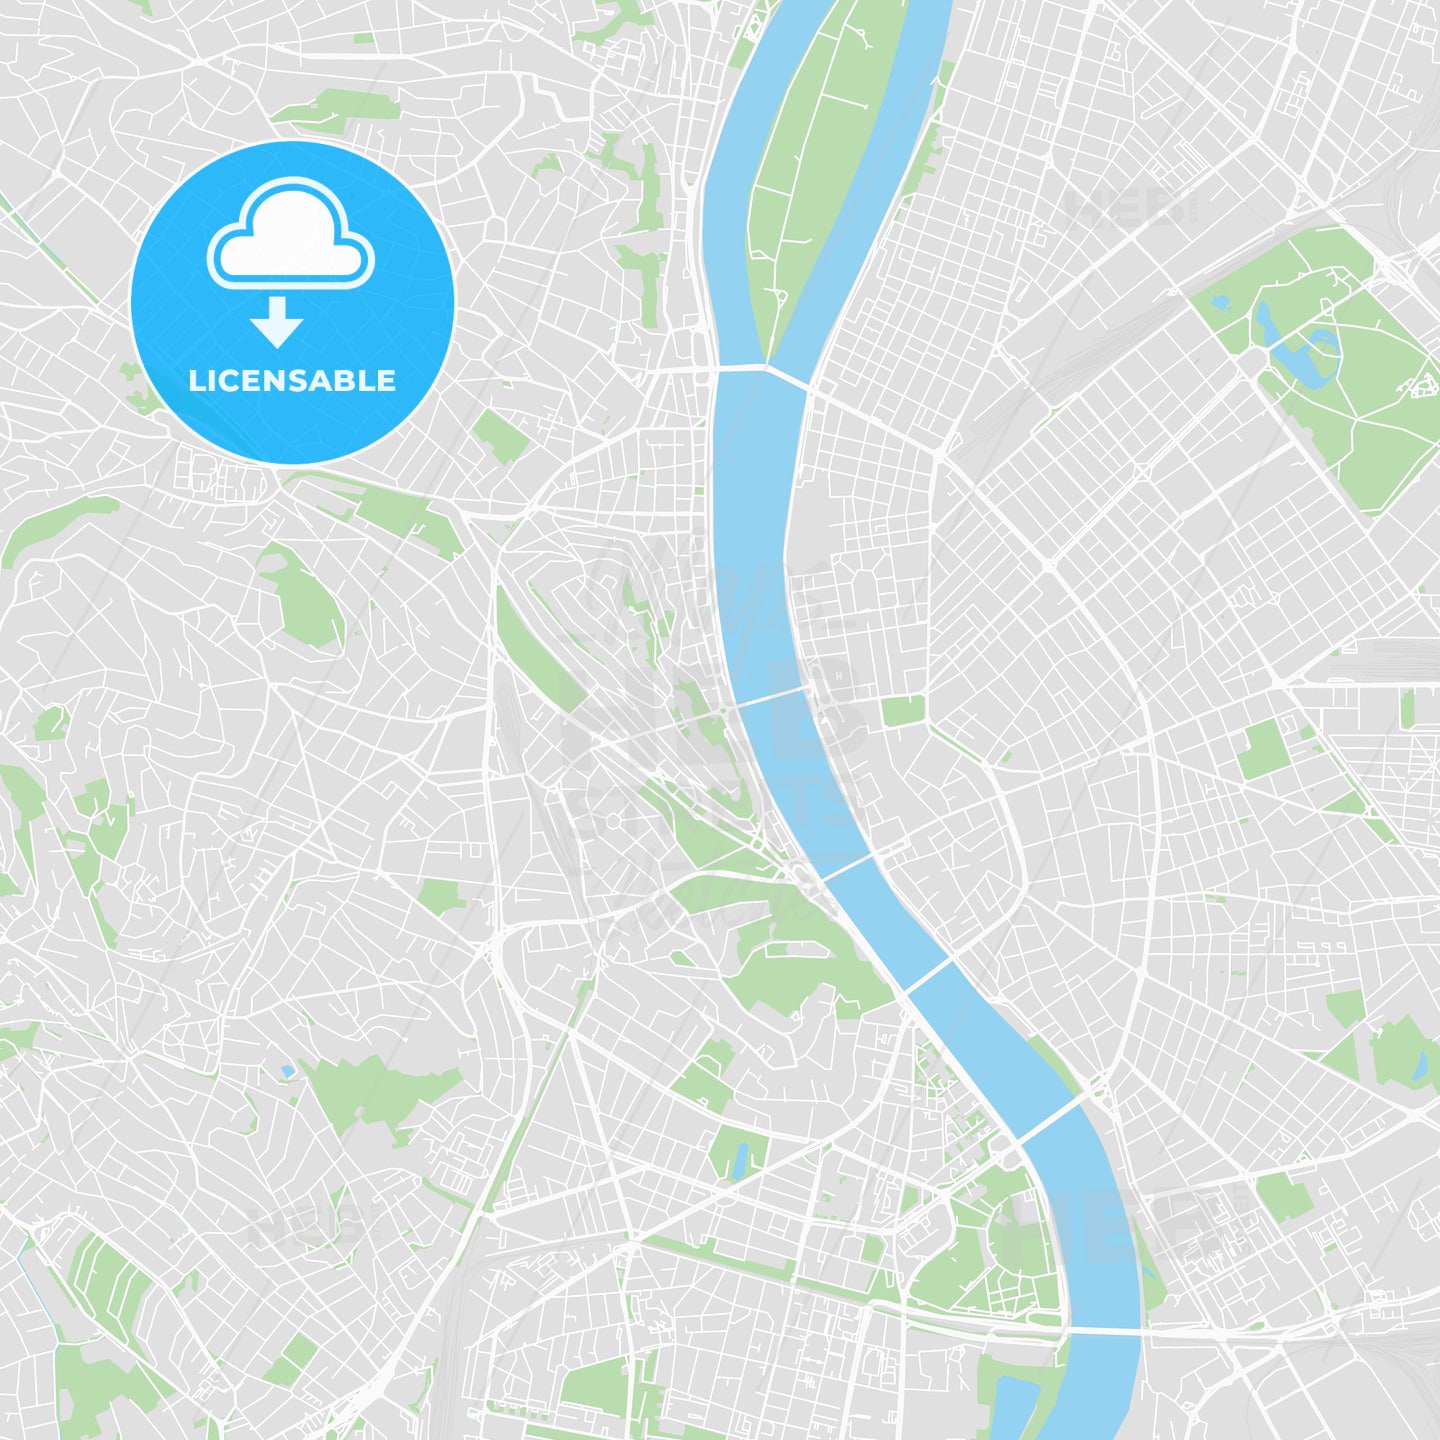 Printable map of Budapest, Hungary